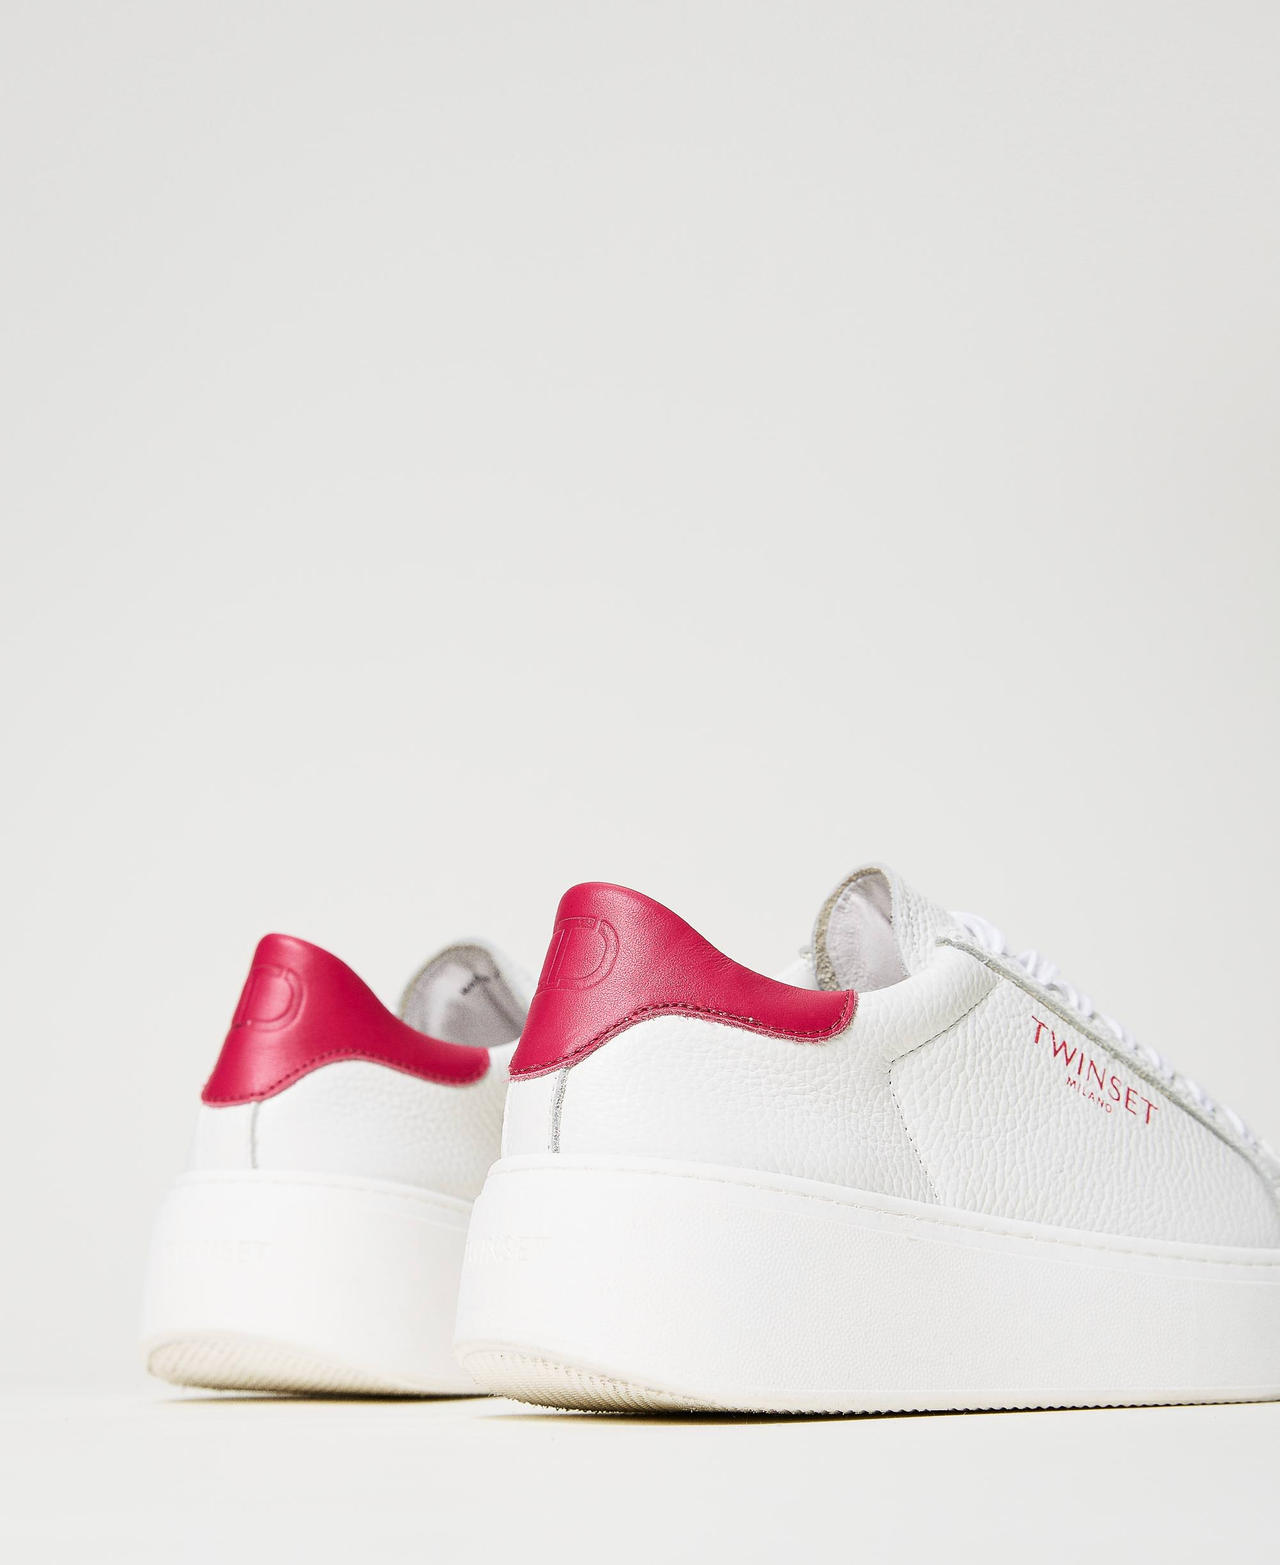 Zapatillas de piel con plataforma Bicolor Blanco Óptico / Rosa "Bright Rose" Mujer 241TCP050-03